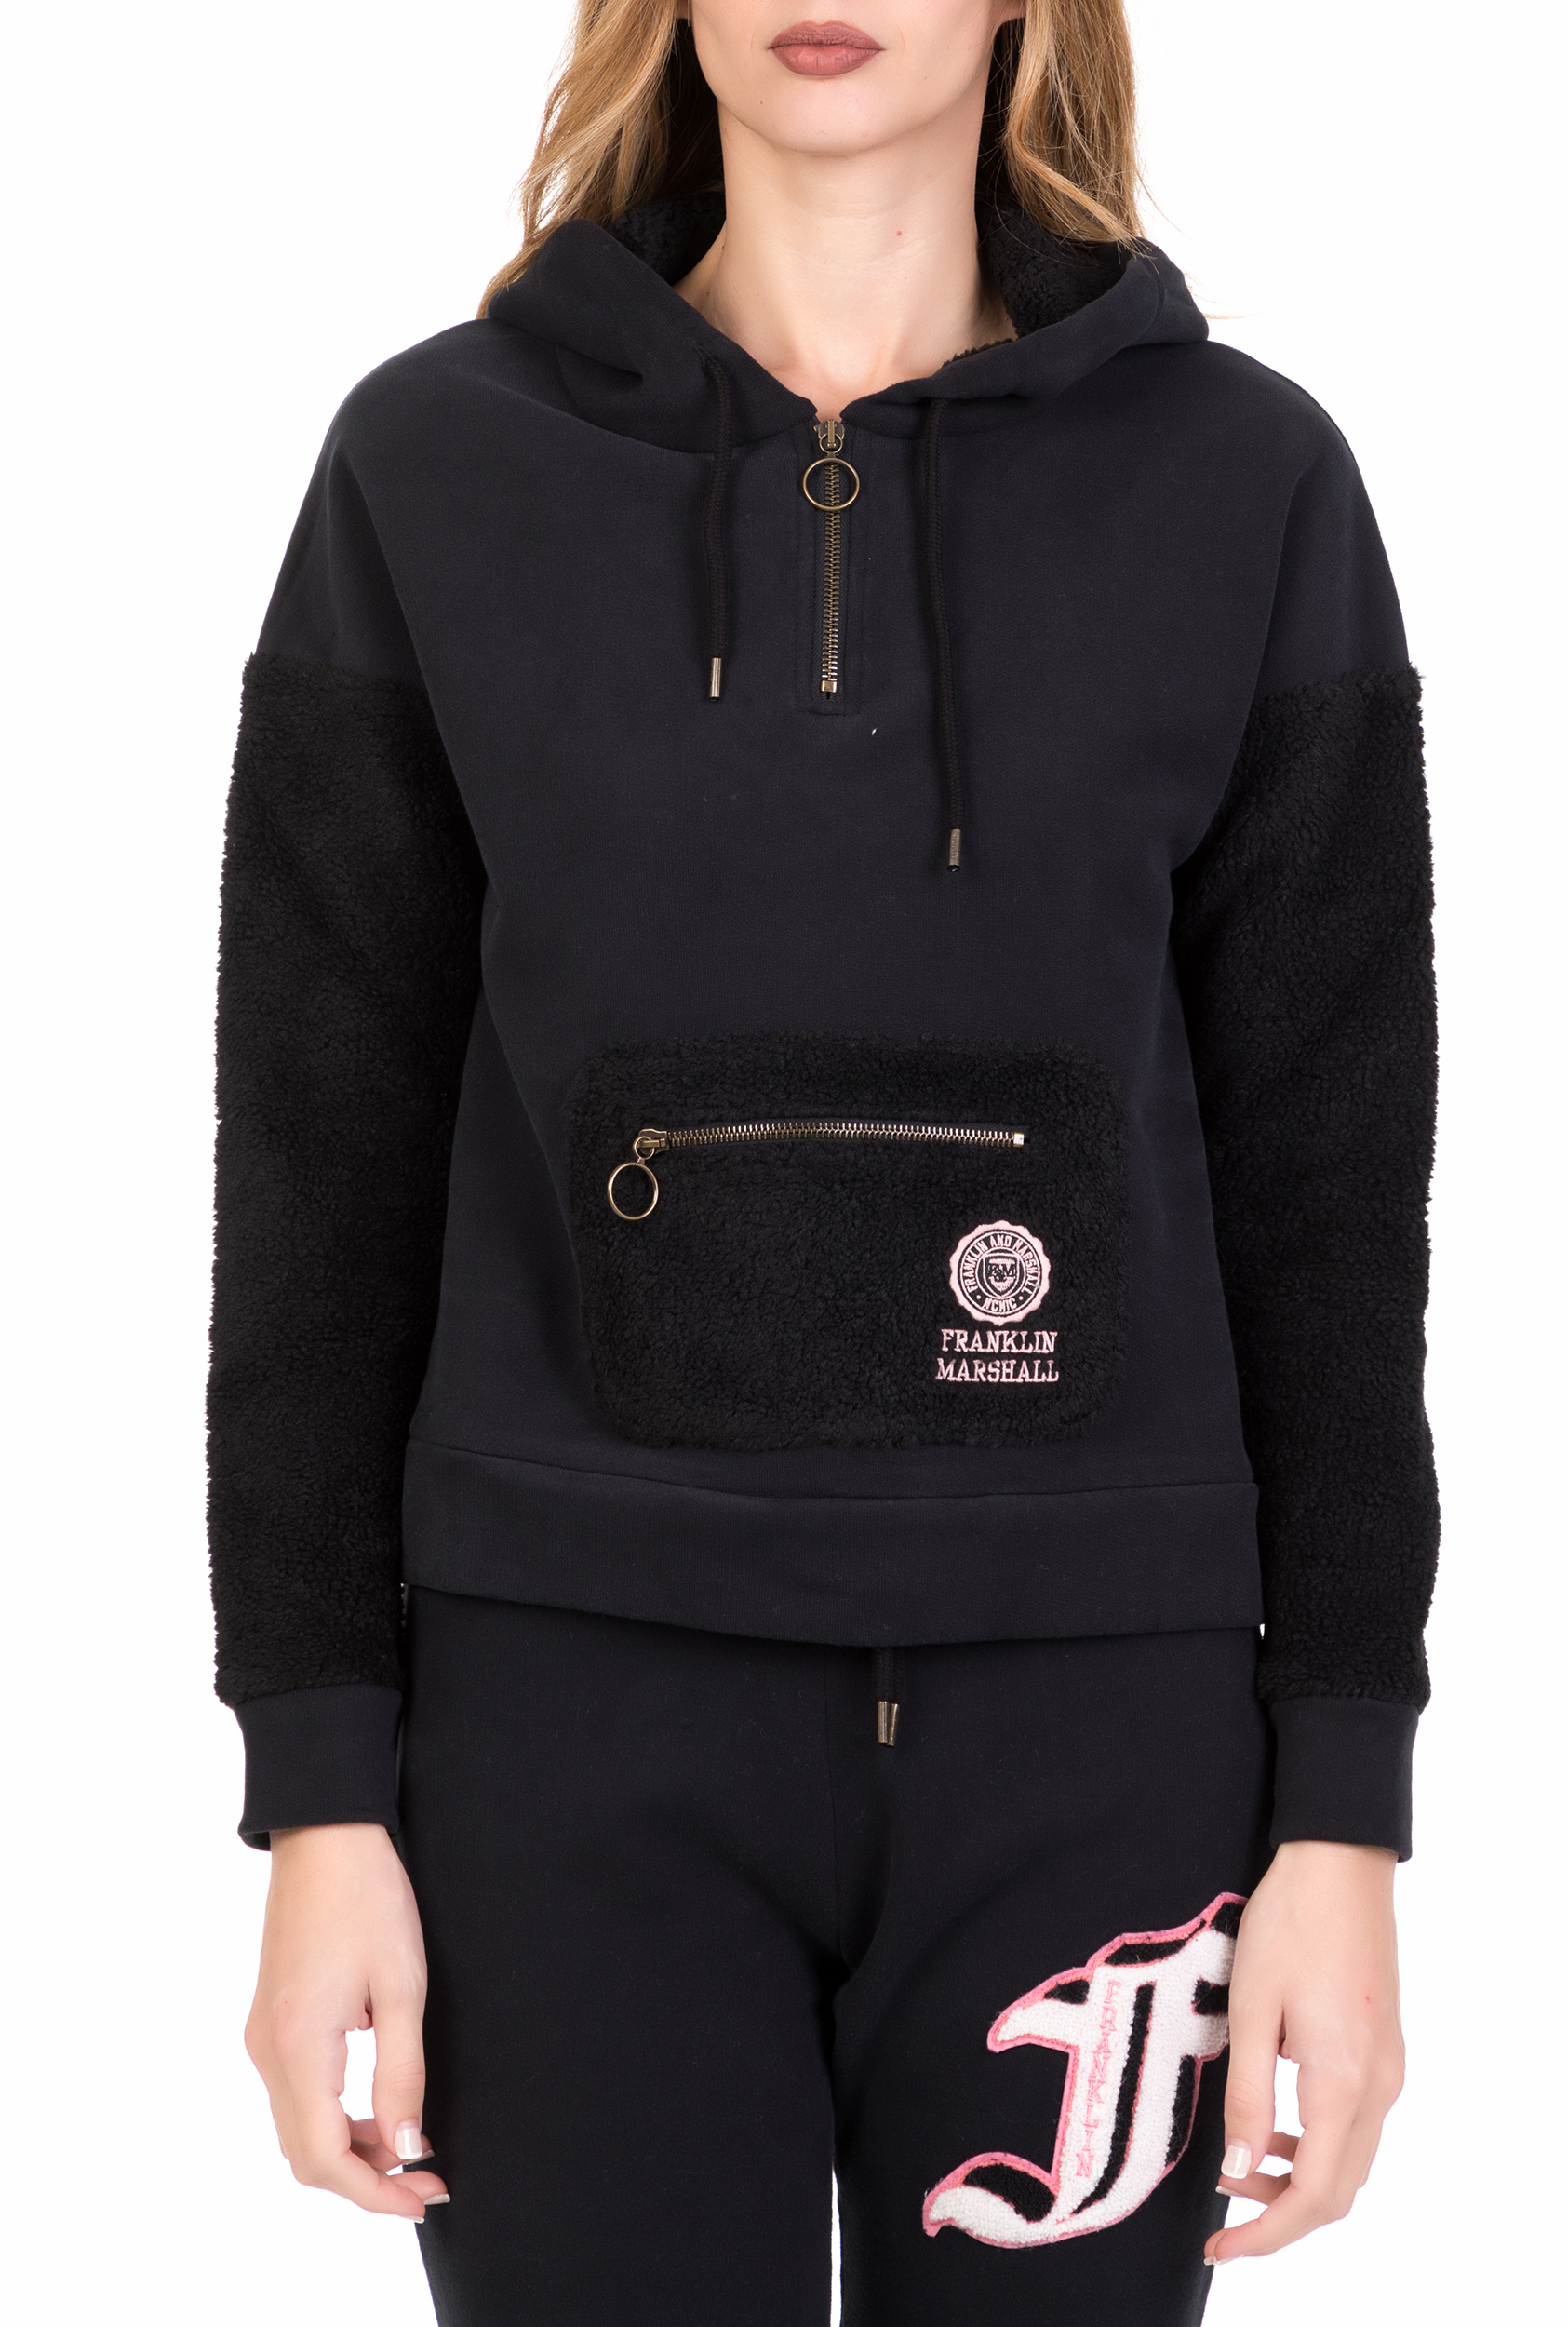 Γυναικεία/Ρούχα/Φούτερ/Μπλούζες FRANKLIN & MARSHALL - Γυναικεία φούτερ μπλούζα με κουκούλα FRANKLIN & MARSHALL μαύρη